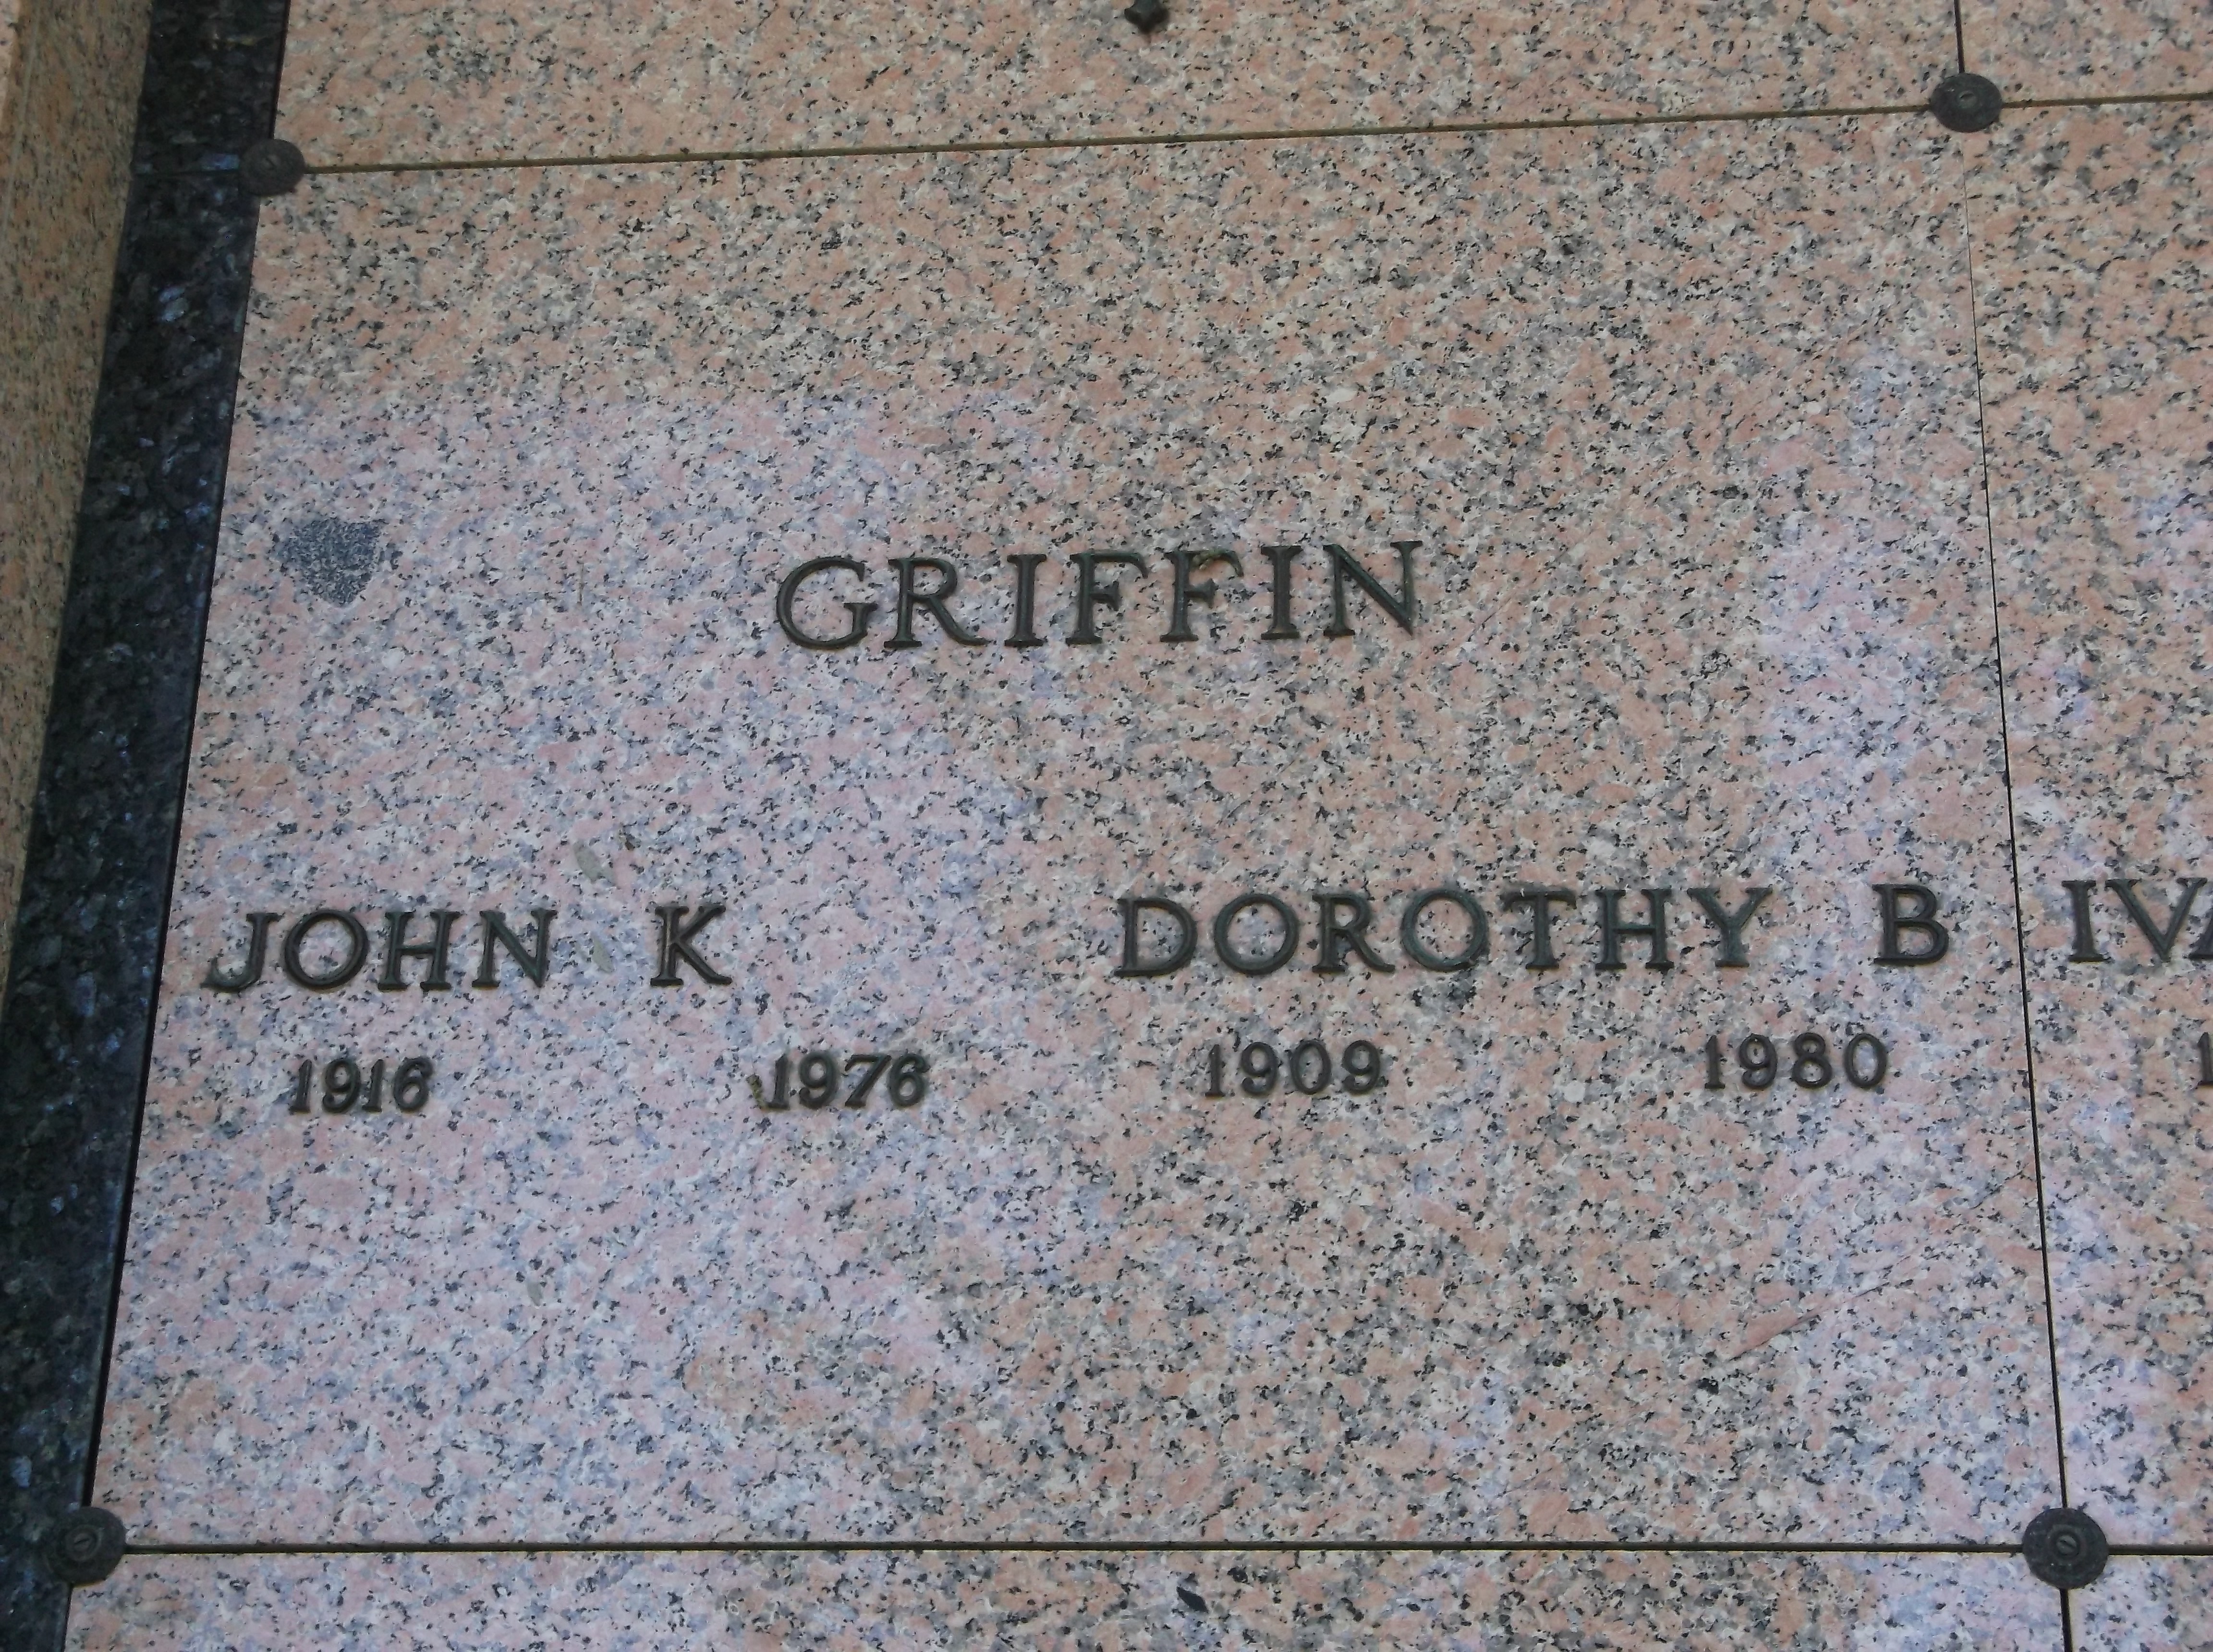 John K Griffin